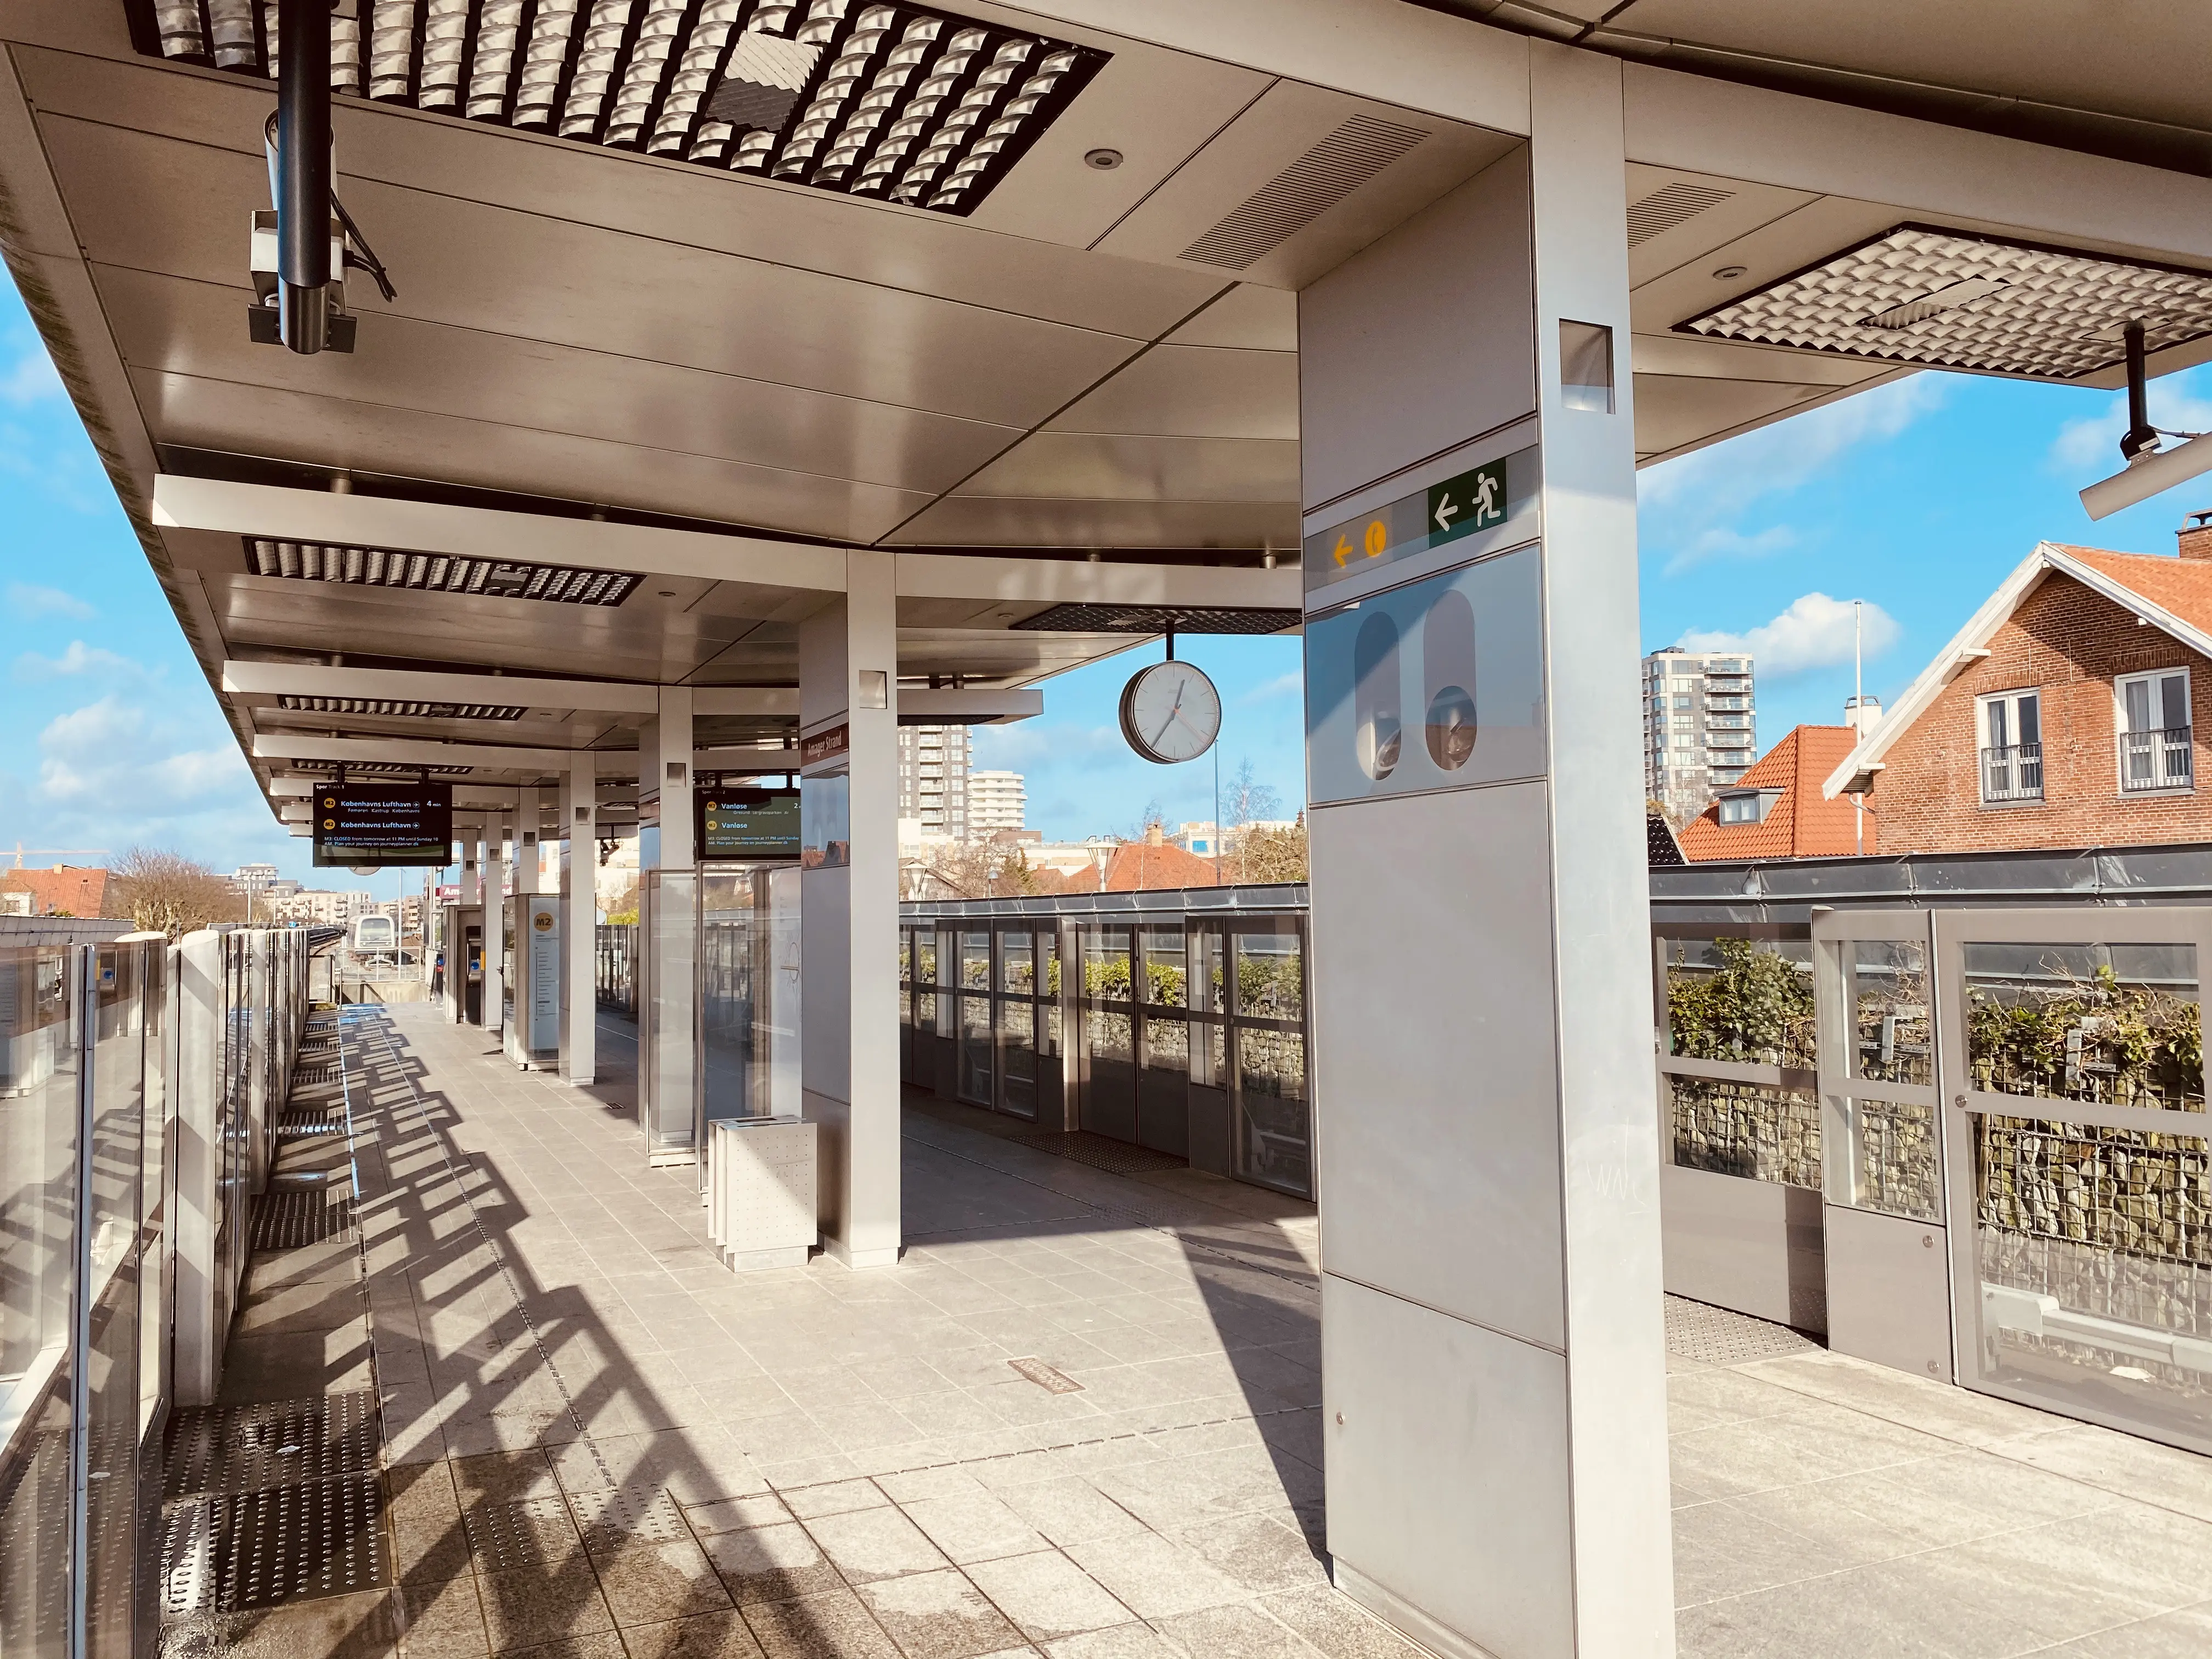 Amager Strand Metrostation ligger tæt på hvor Engvej Trinbræt oprindelig lå